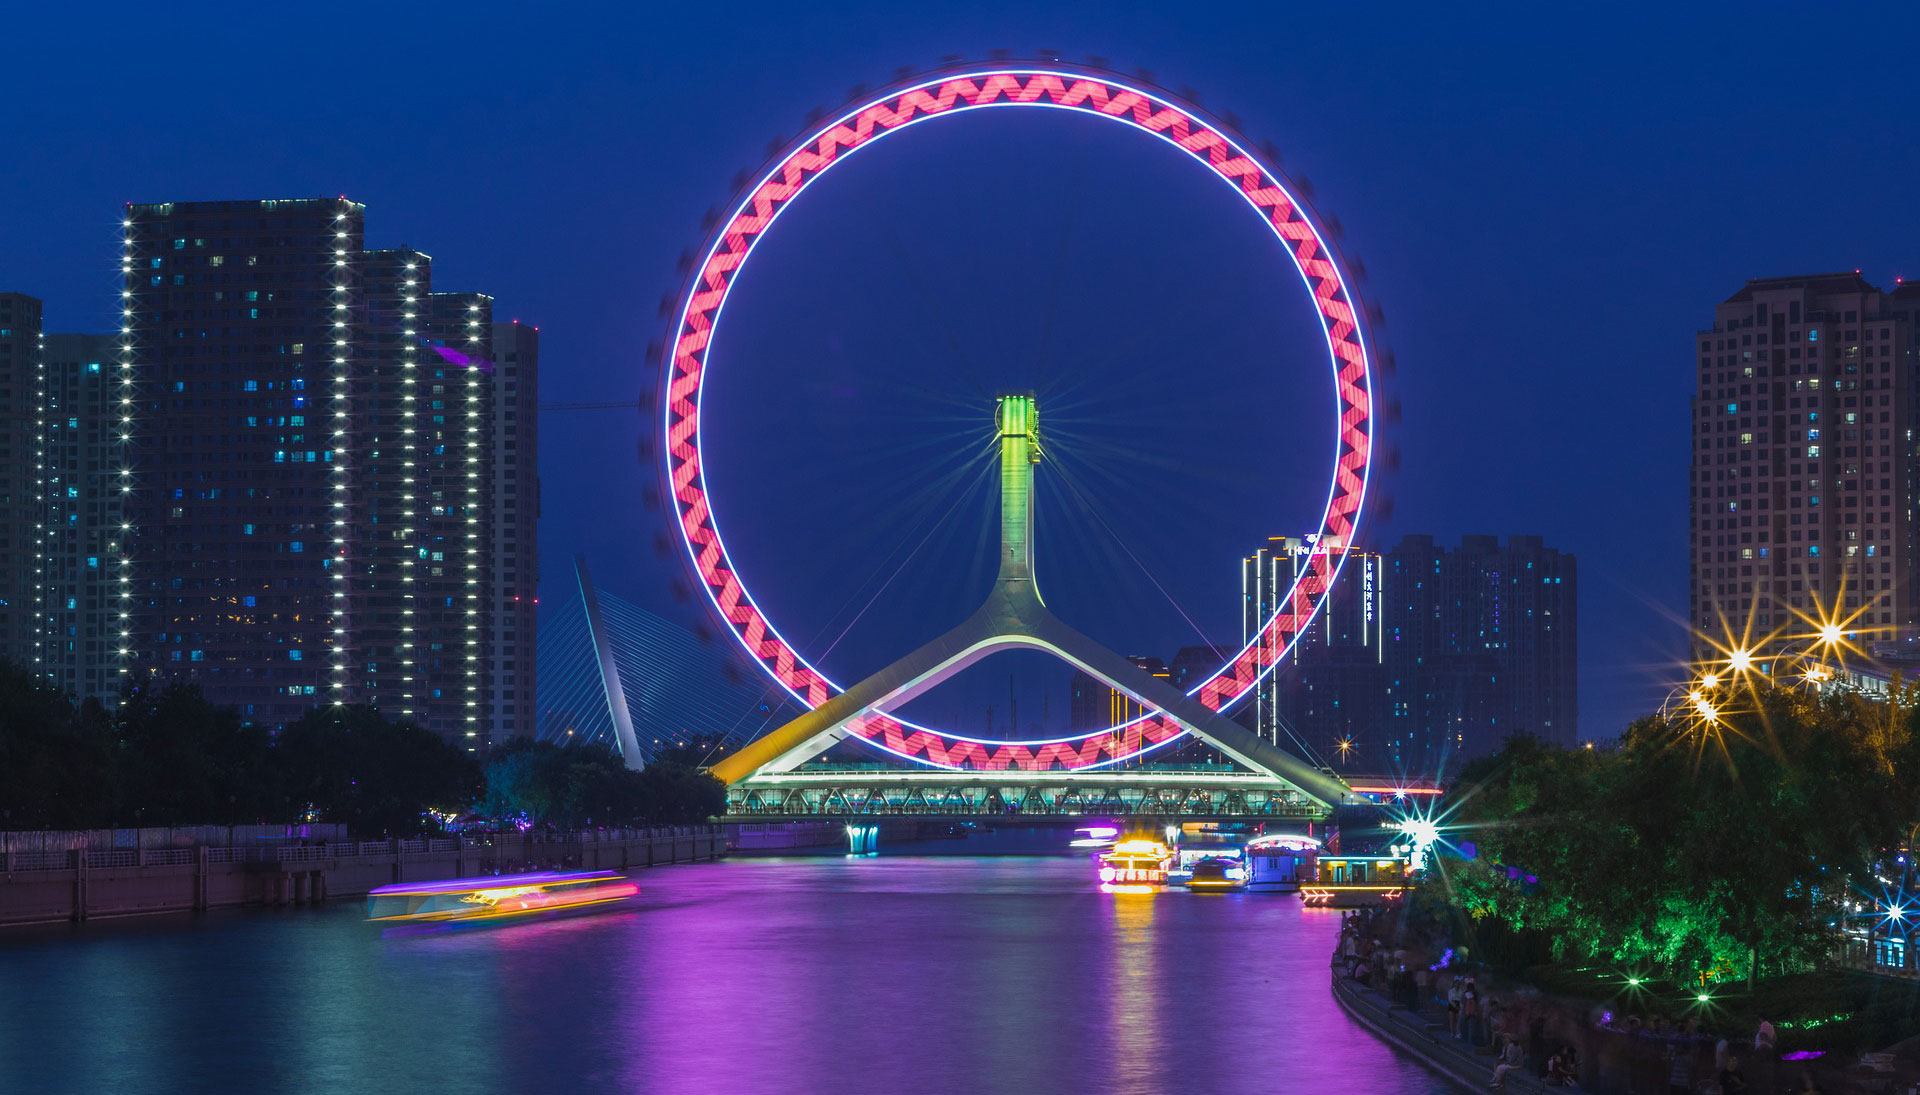 Das Riesenrad von Tianjin